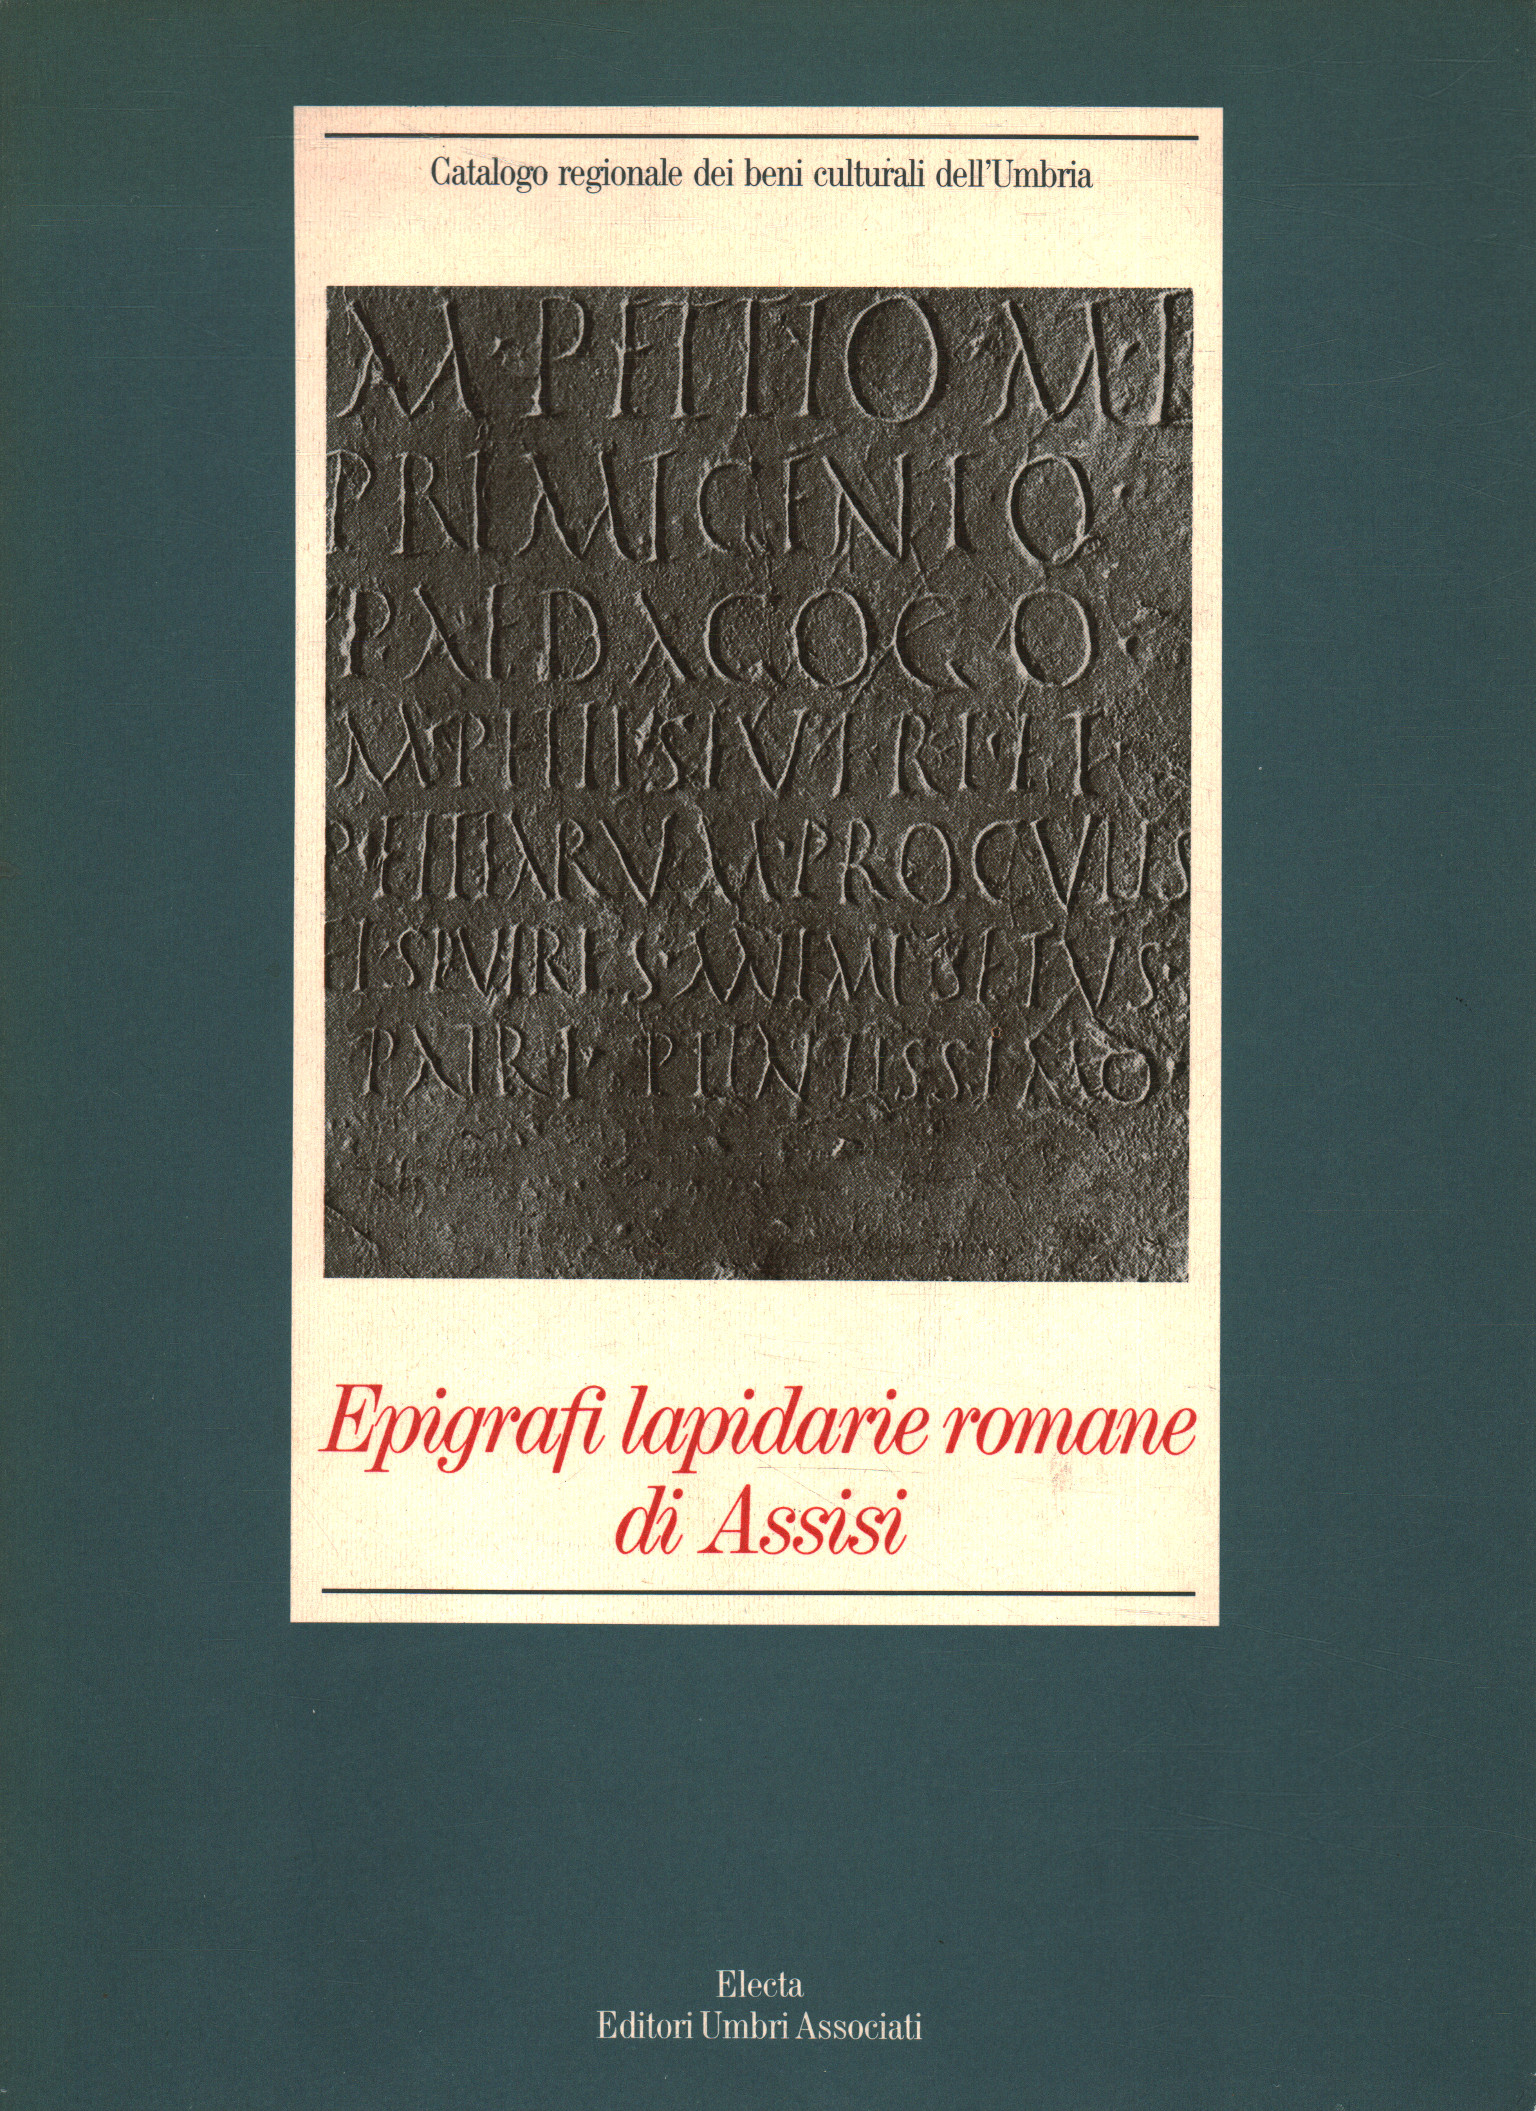 Epígrafes lapidarios romanos de Asís